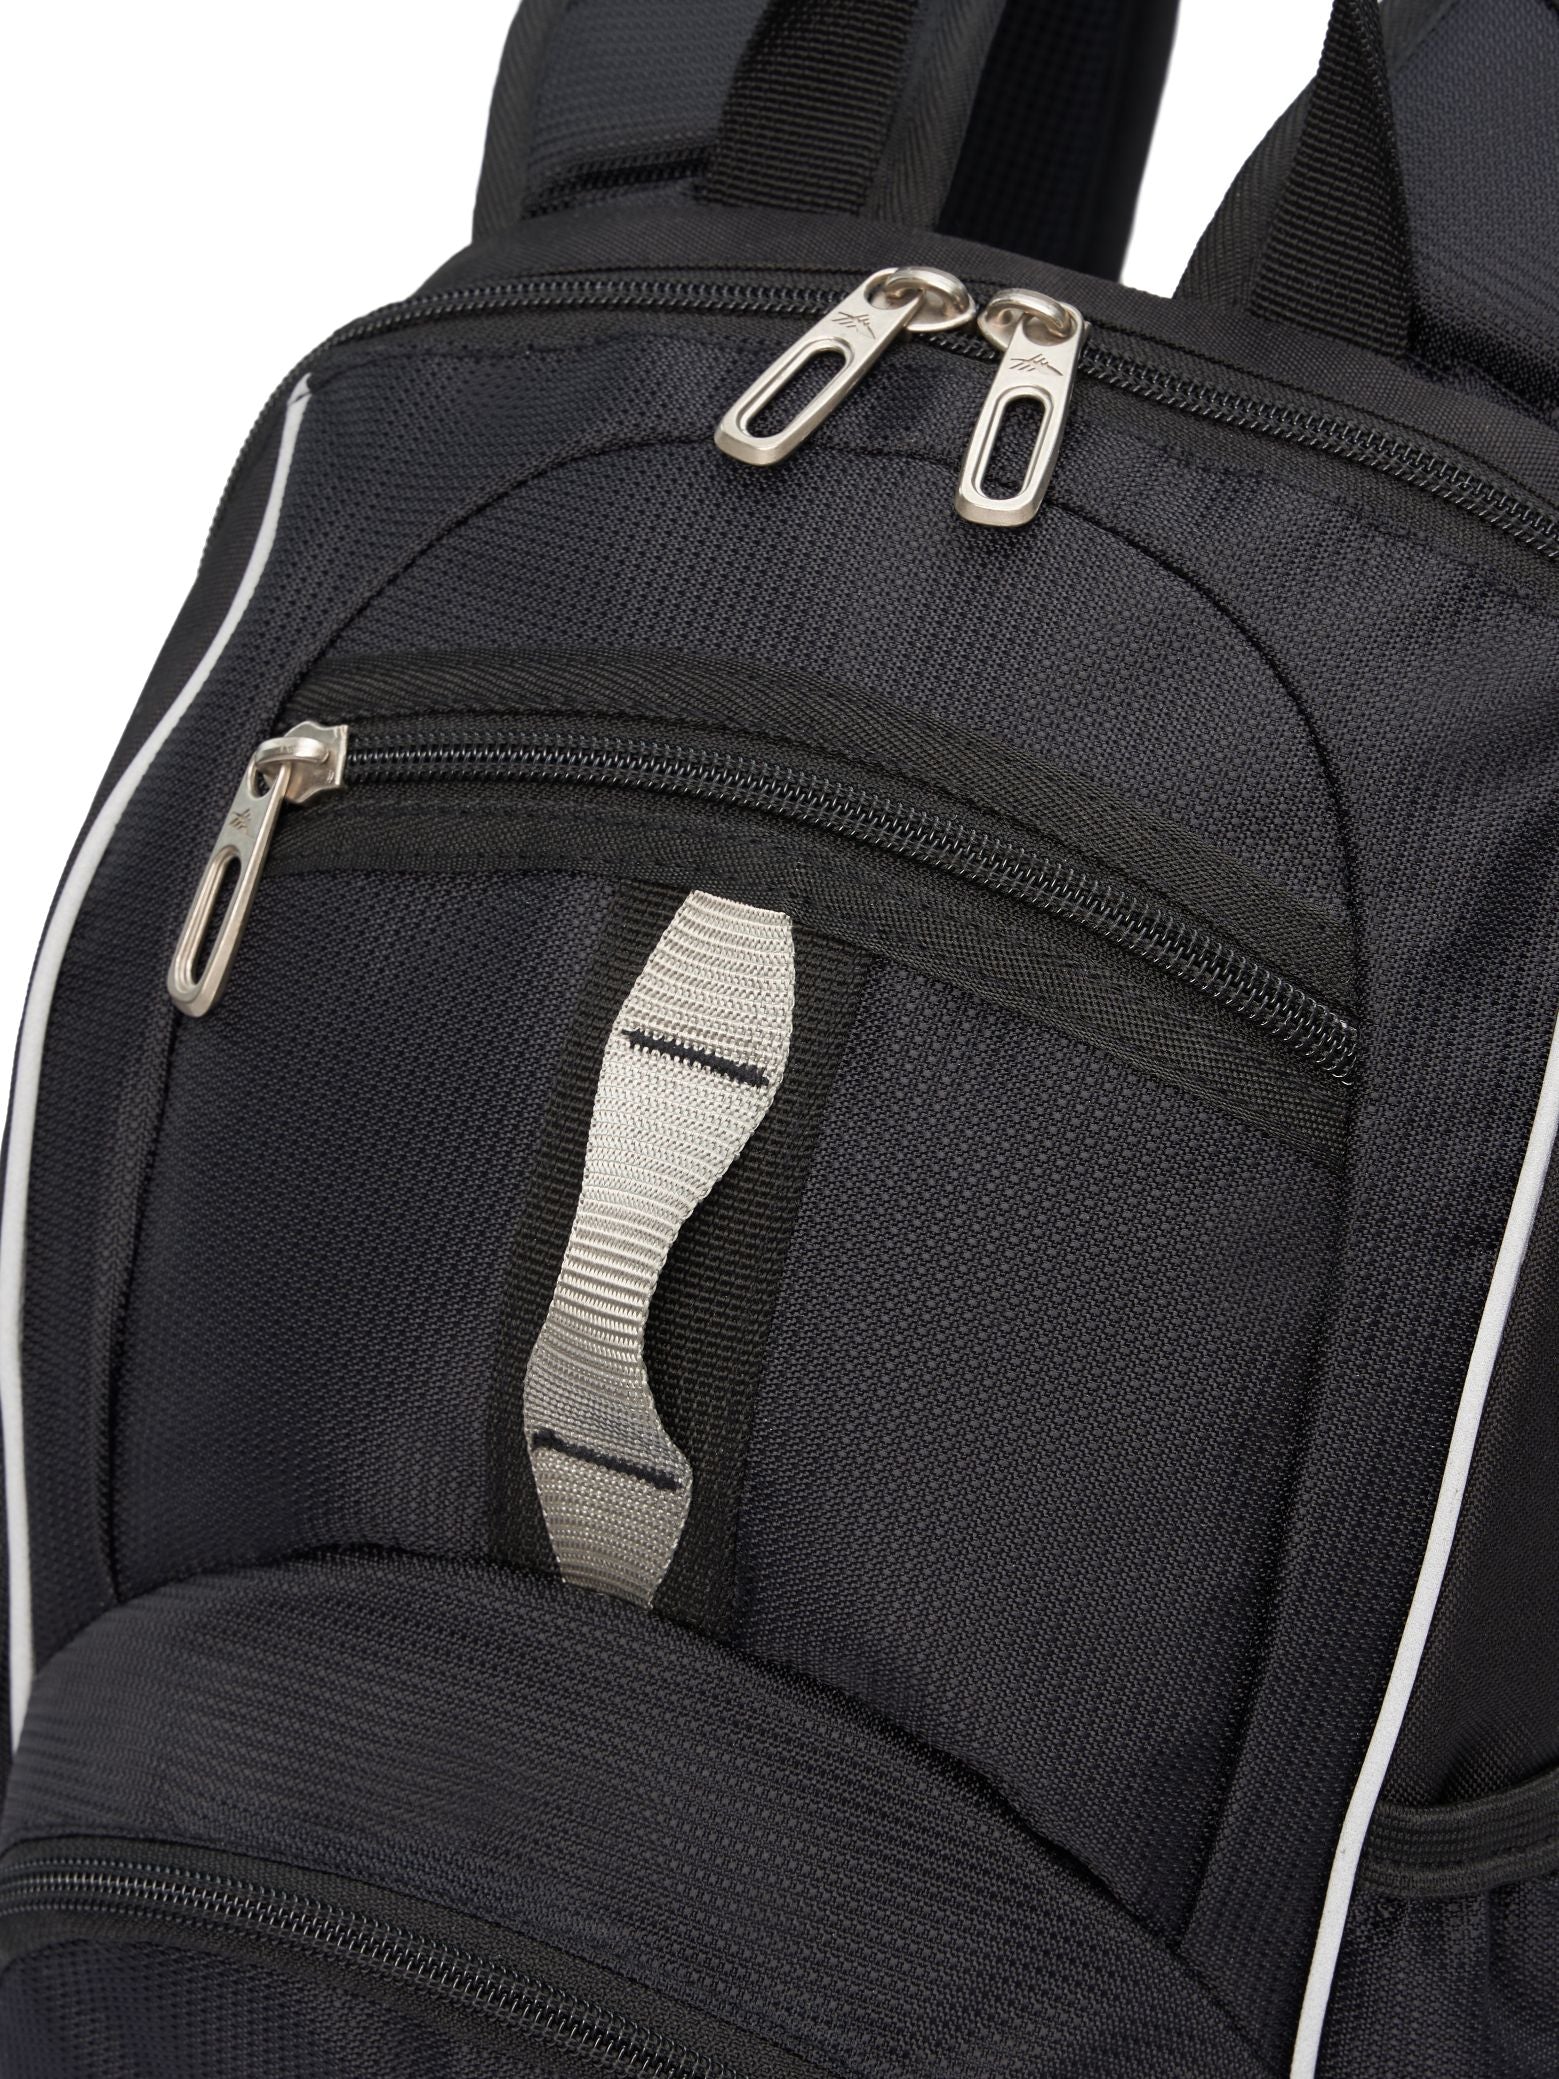 High Sierra - Mini Backpack 2.0 - Black/Silver-7